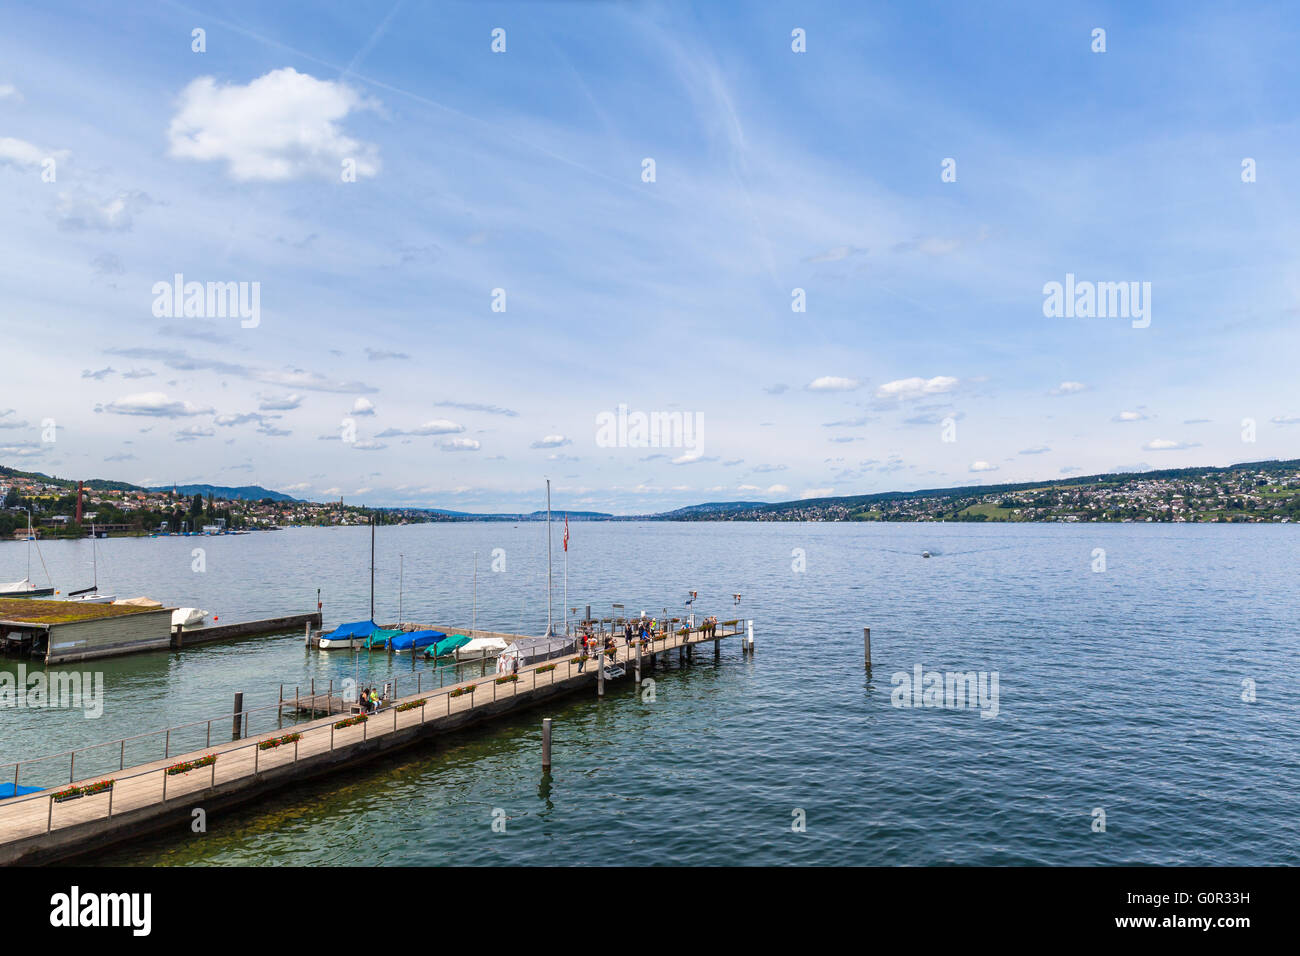 Vue panoramique du lac de Zurich à l'embarcadère à Horgen, Caonton de Zurich, Suisse. Banque D'Images